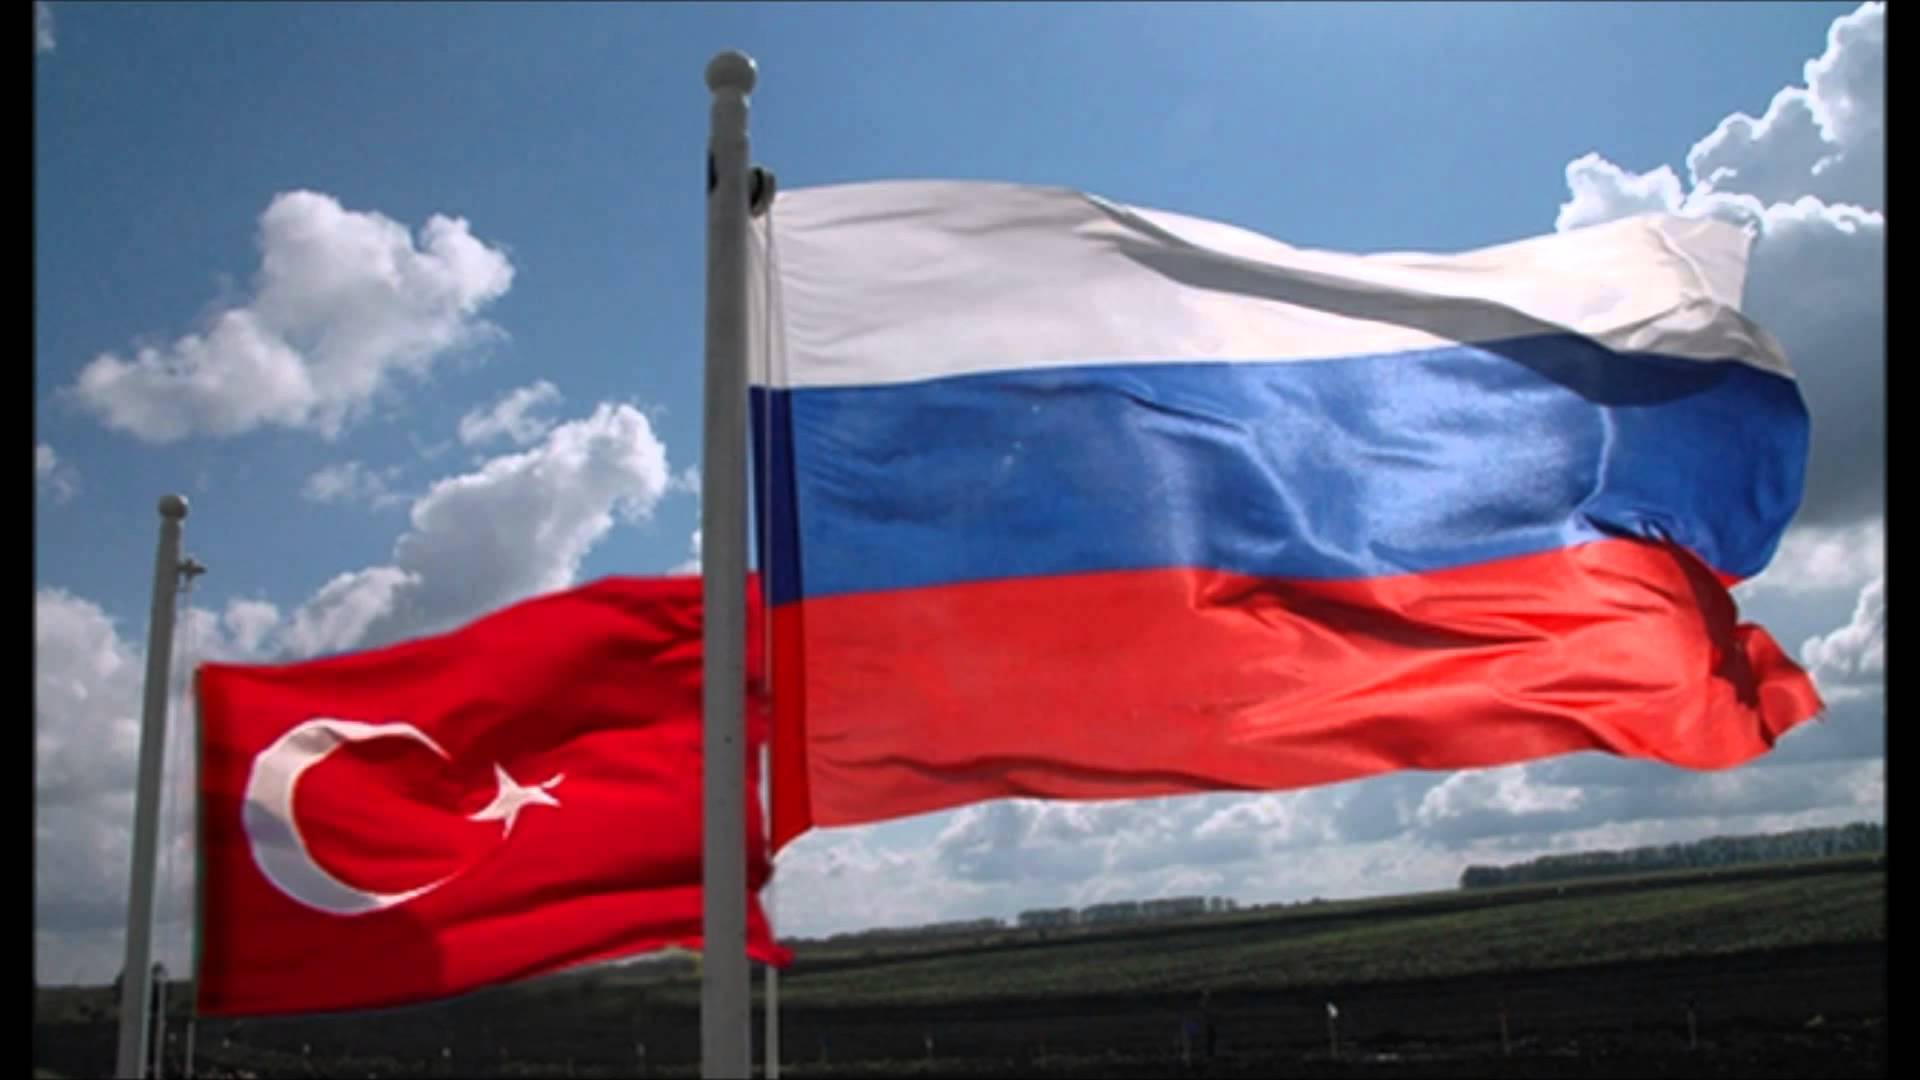 Փորձագետ. Թուրքիայի և նրա արևմտյան գործընկերների հակասությունները ձեռնտու են ՌԴ-ին